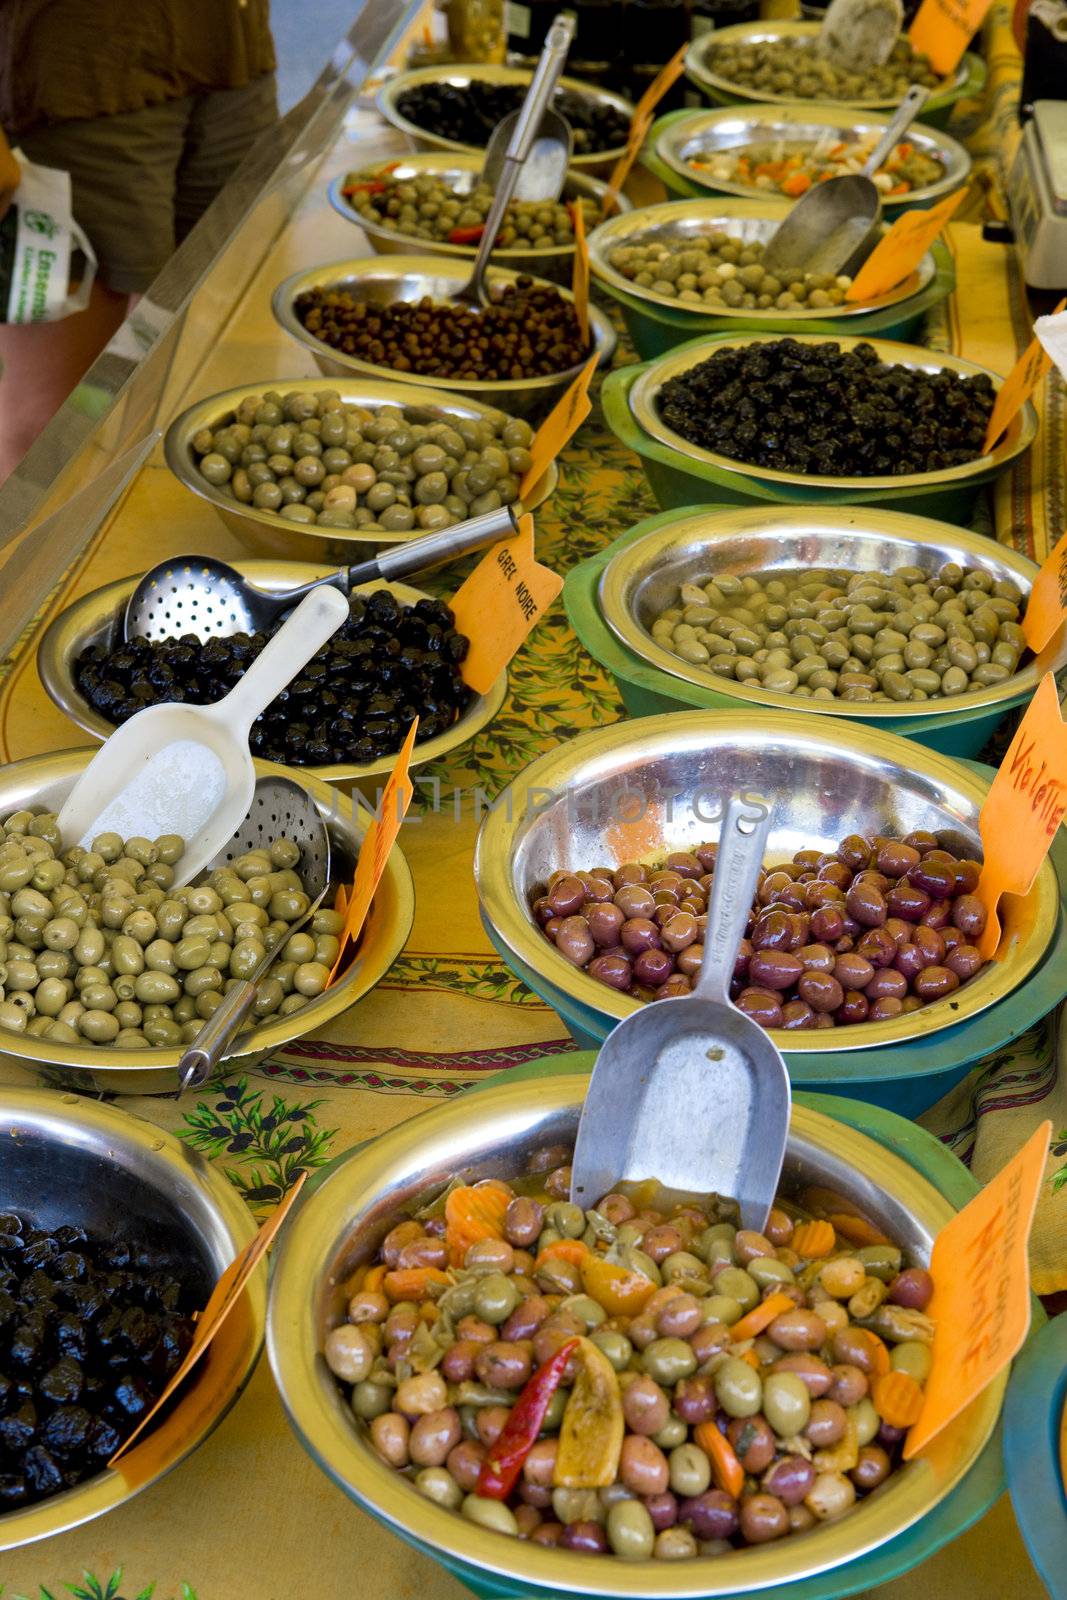 olives, street market in Castellane, Provence, France